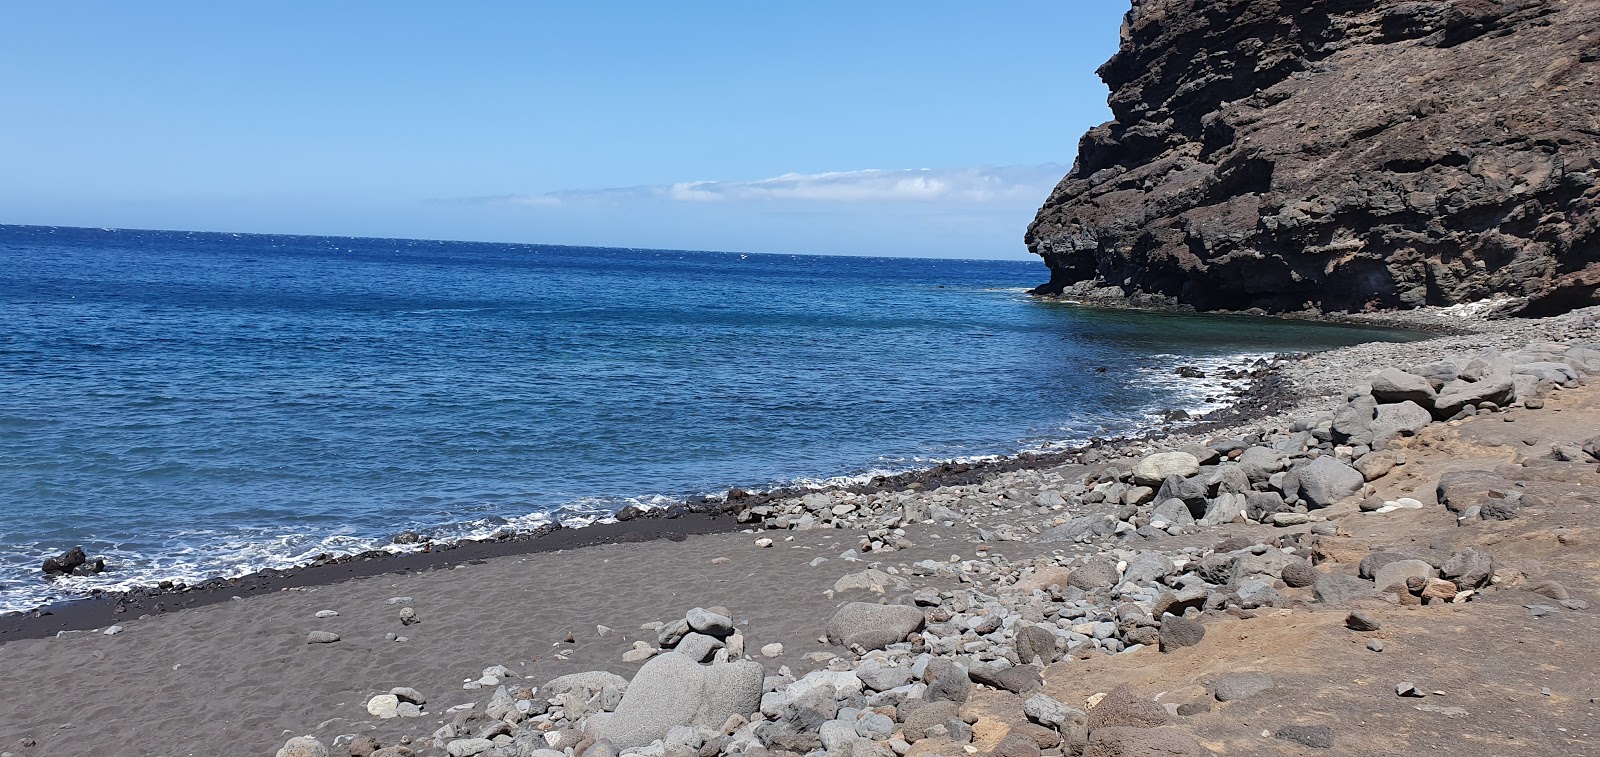 Playa de Tasartico'in fotoğrafı geniş plaj ile birlikte